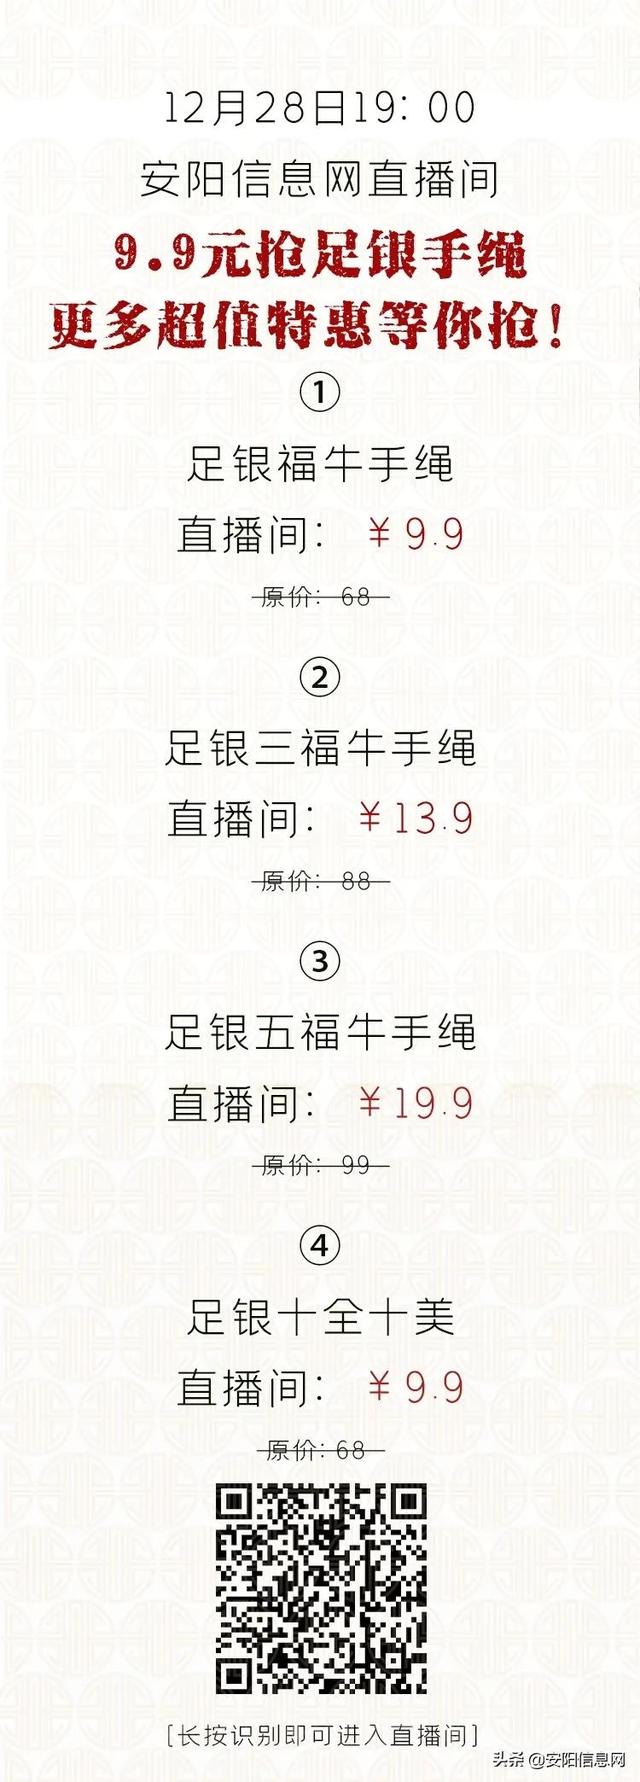 2018年12月深圳化妆品牌活动细则  第15张